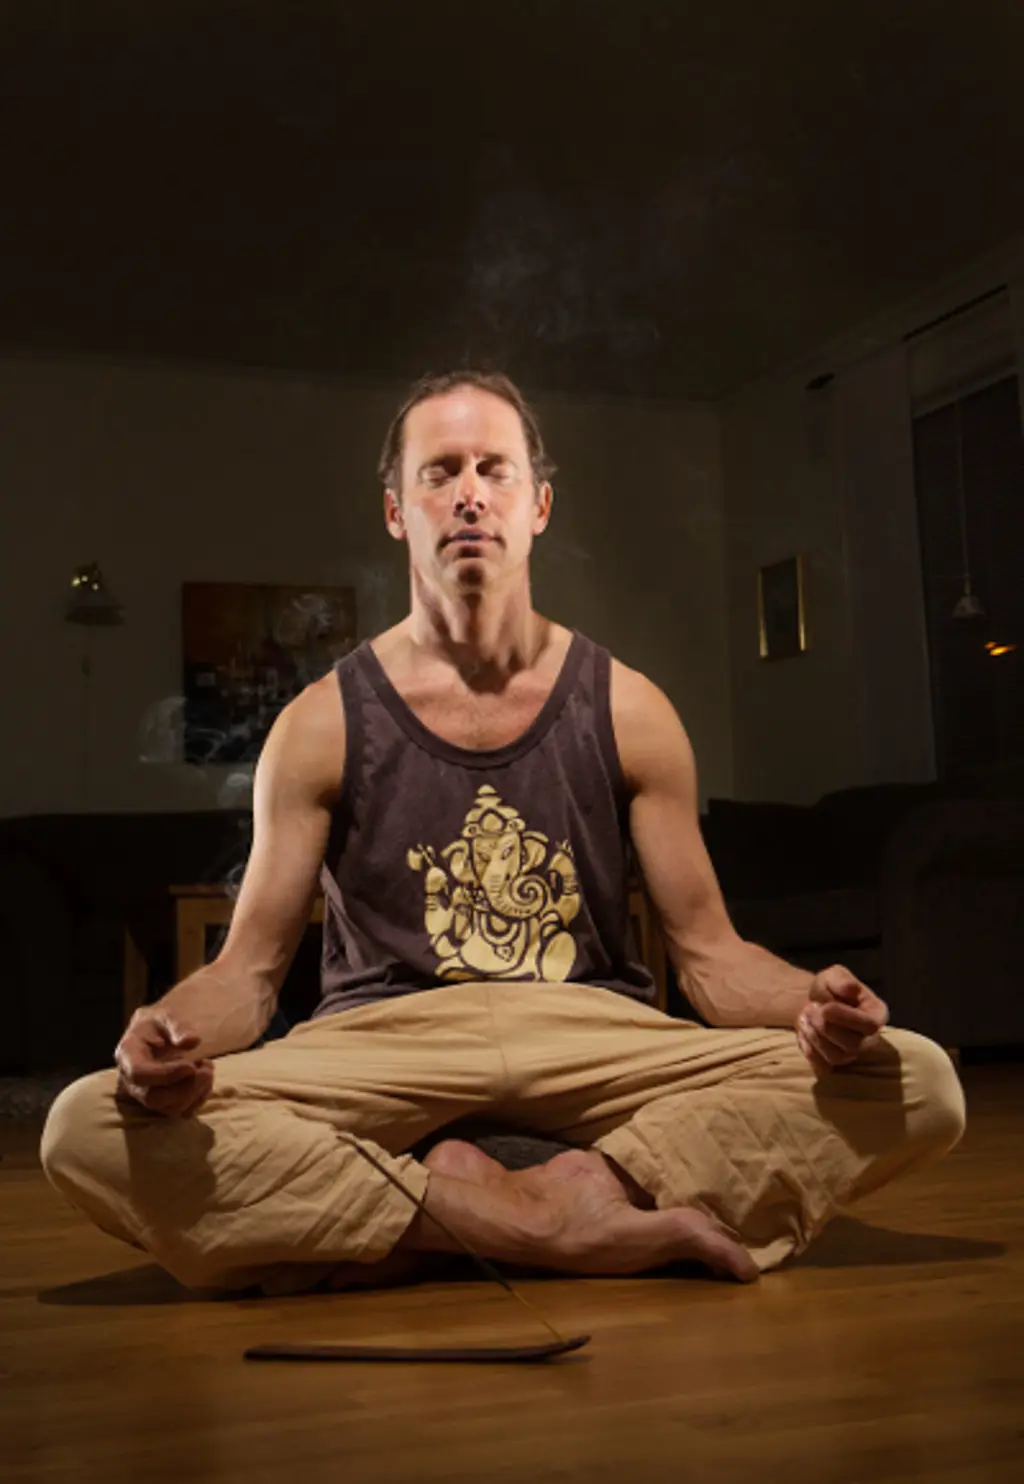 Øystein Rushfeldt sitter med beina i kors og har øynene igjen. klassisk meditasjonspositur. 